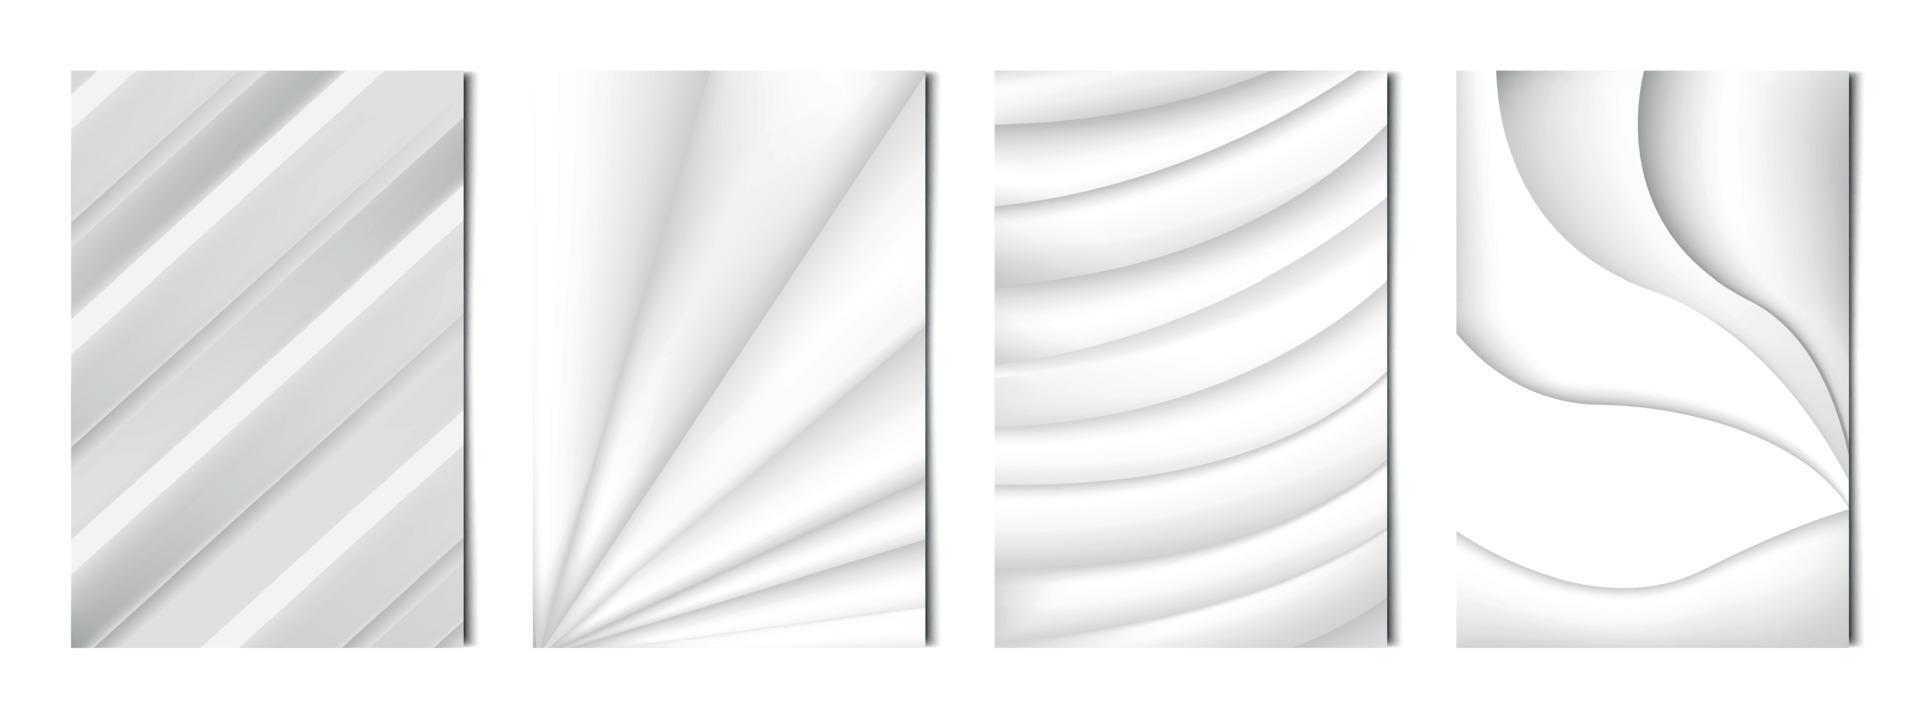 Satz von 4 Stück abstrakten hellen Hintergründen wellige weiße Linien, Vorlagen für Werbung, Visitenkarten, Texturen - Vektor